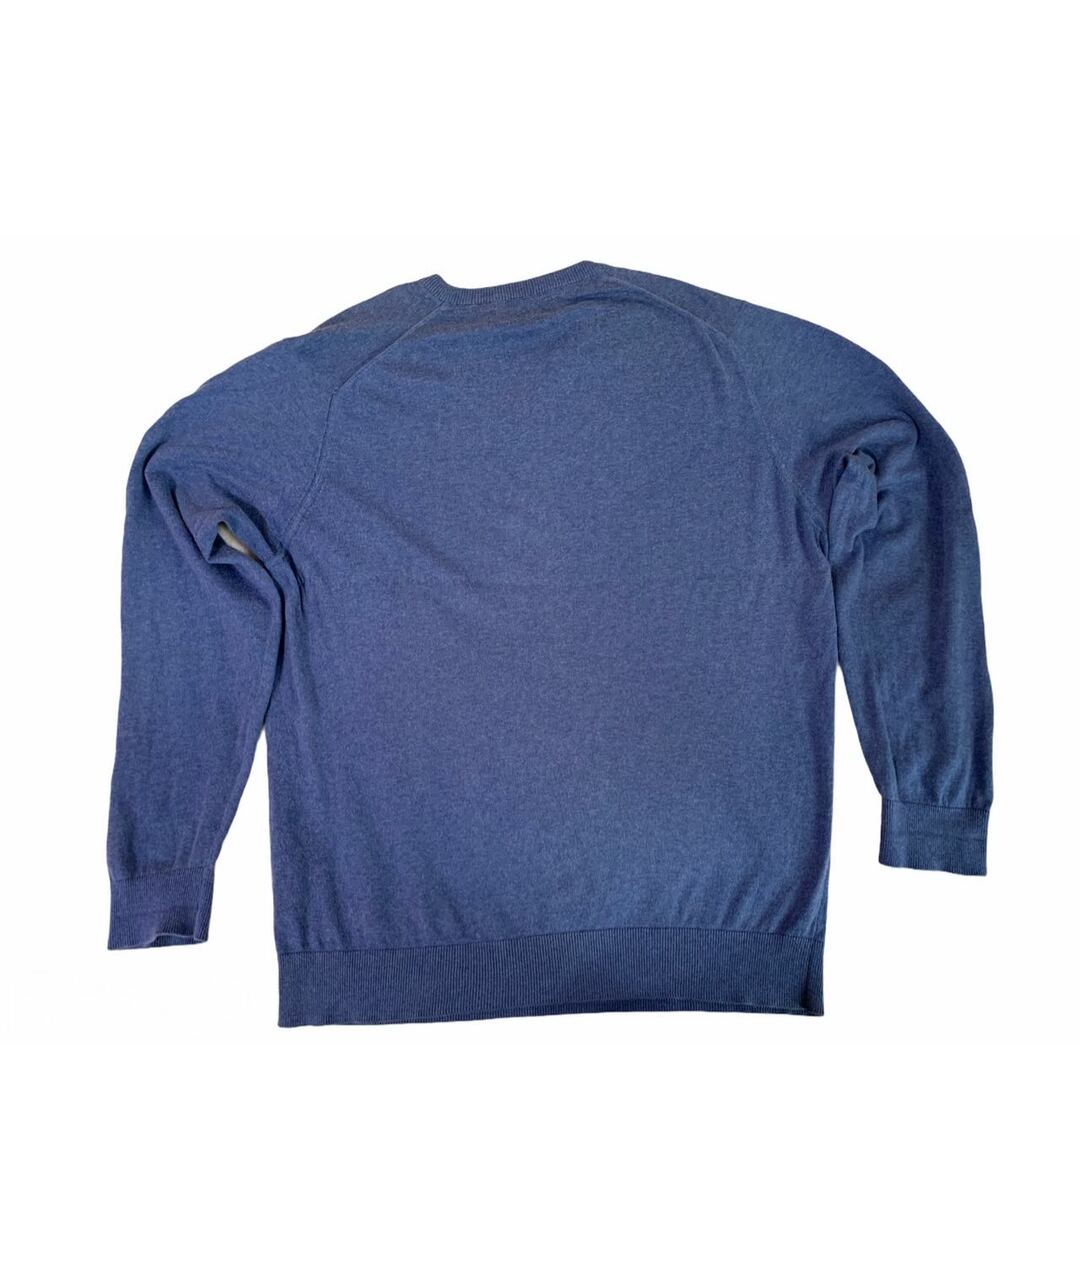 BARBOUR Синий шерстяной джемпер / свитер, фото 2